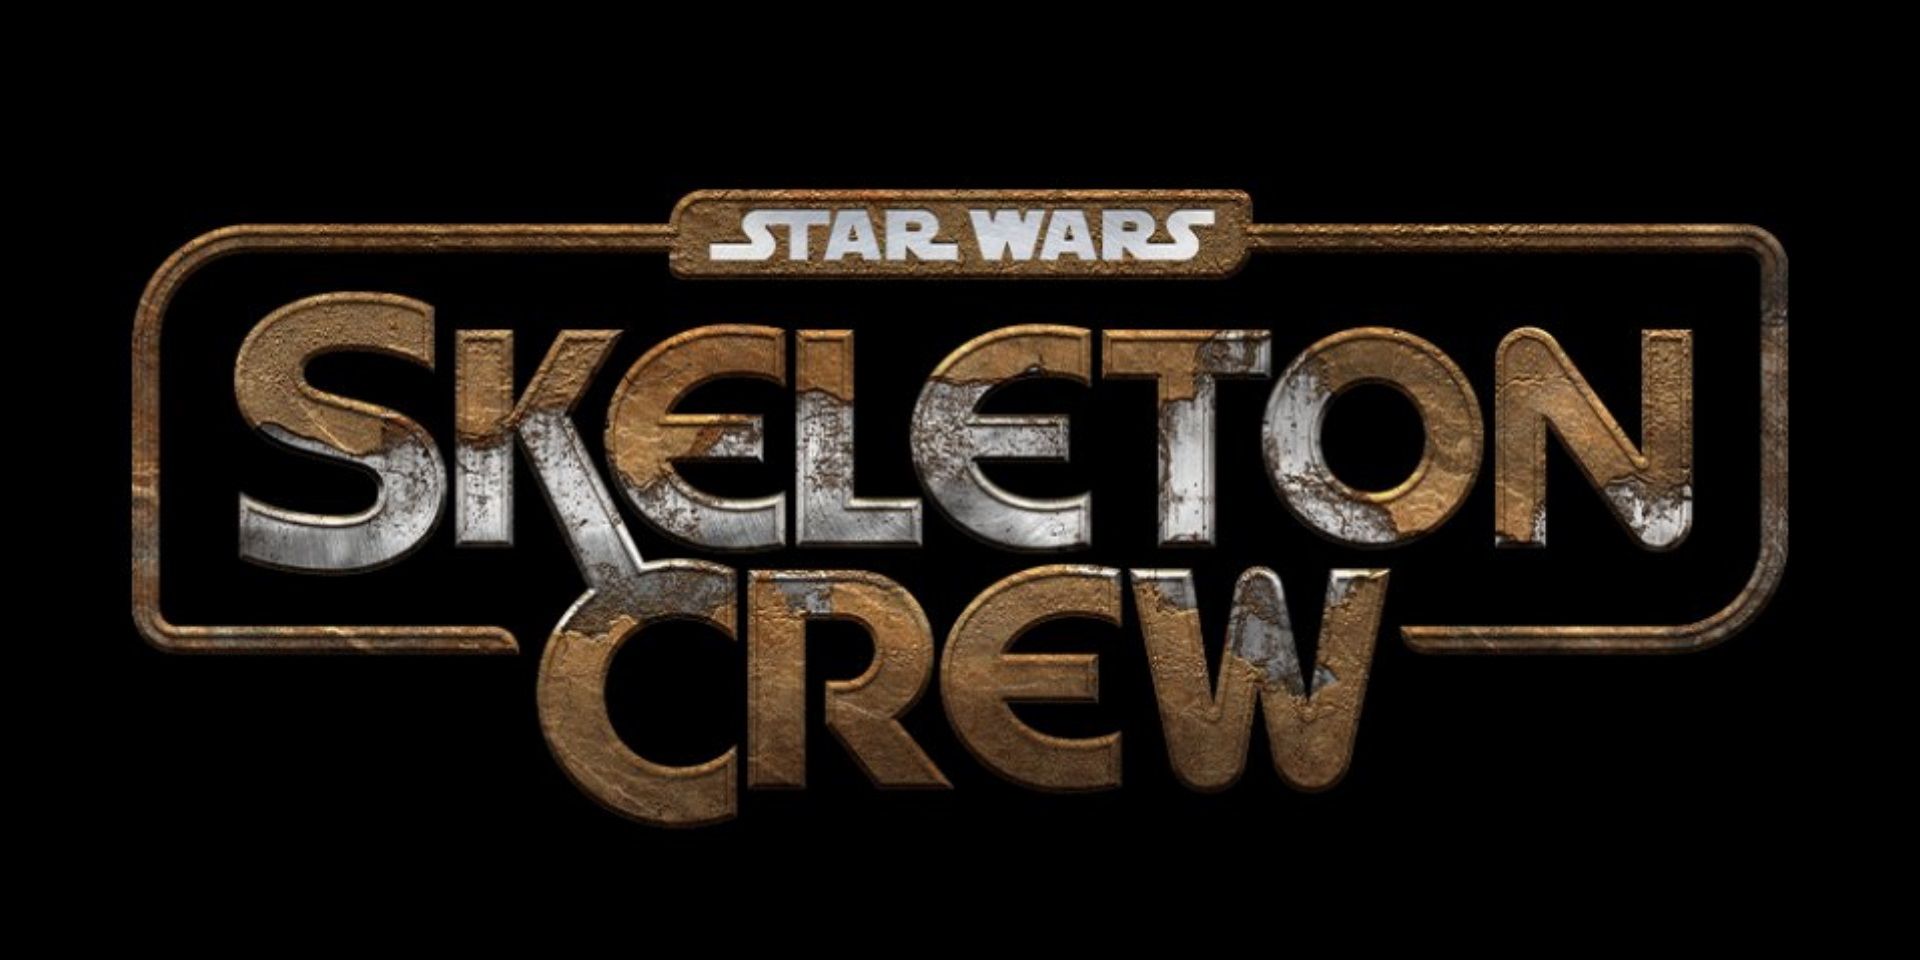 The logo for Star Wars Skeleton Crew